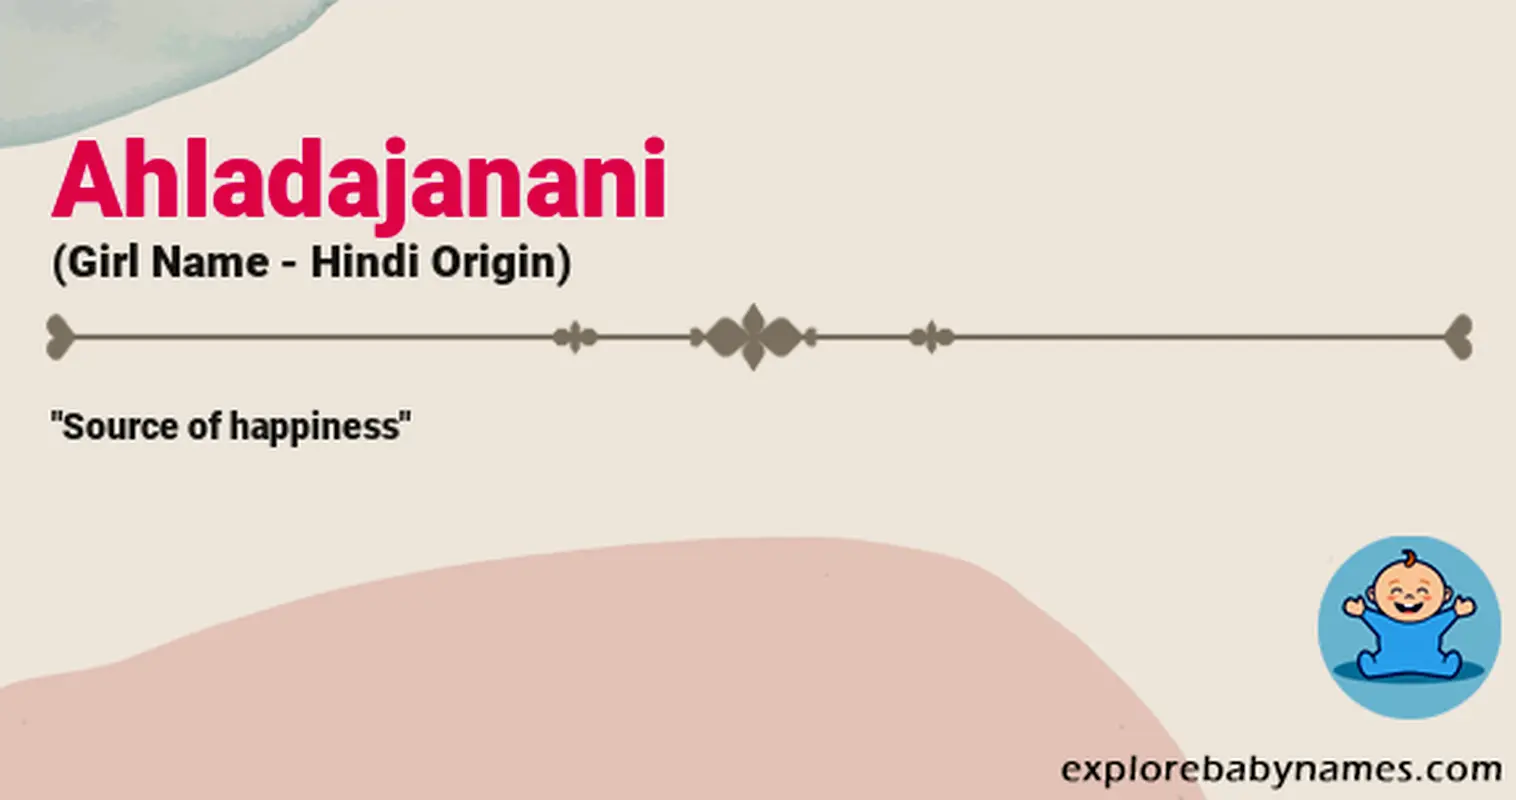 Meaning of Ahladajanani